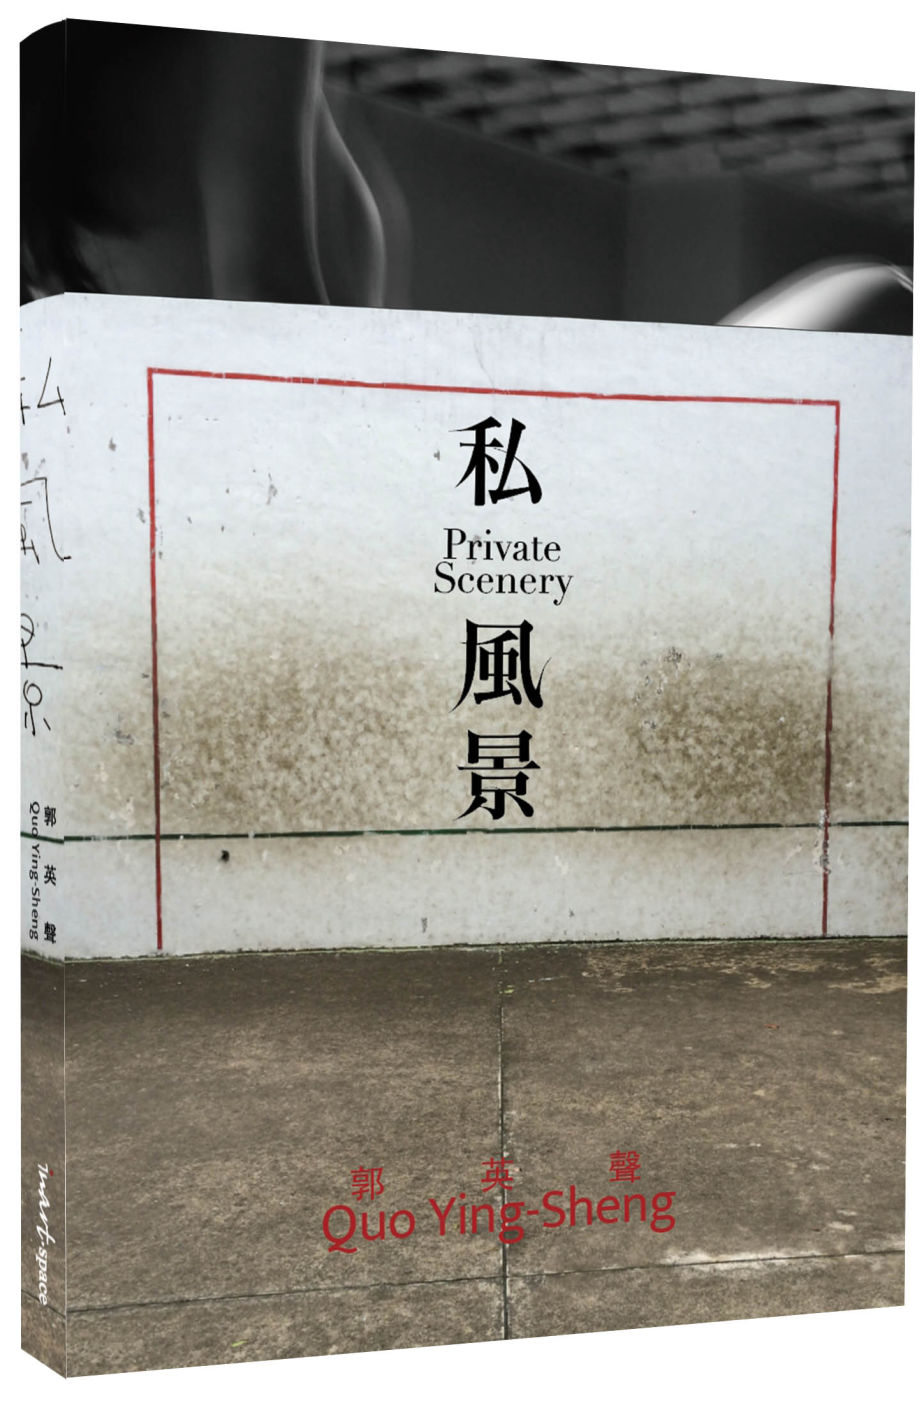 郭英聲 私風景 QUO YING SHENG: PRIVATE SCENERY(限台灣)